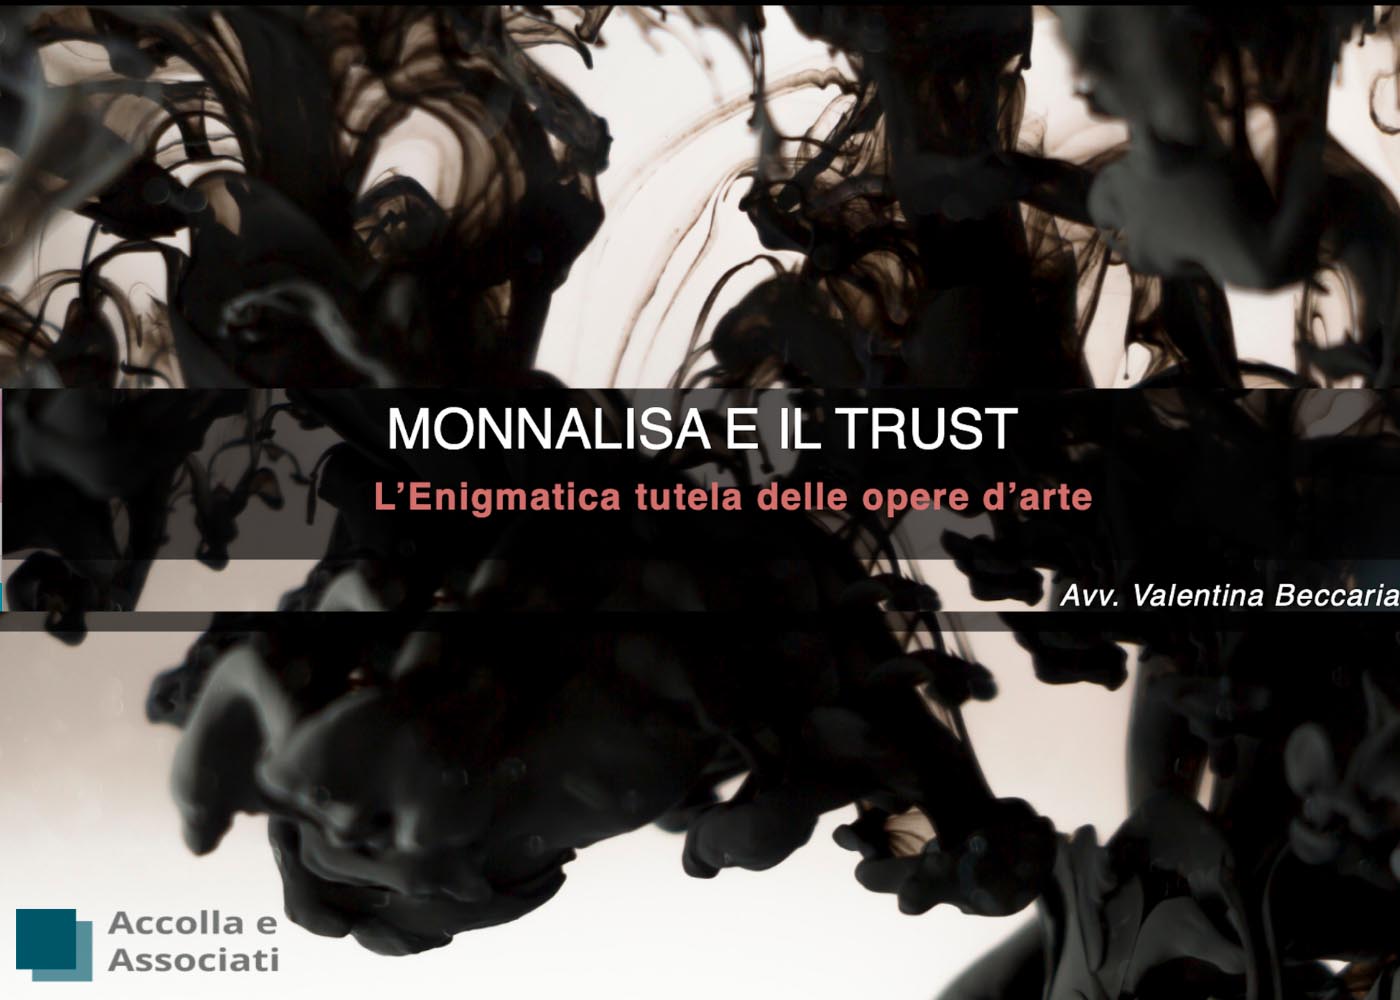 Monnalisa e il trust - L’Enigmatica tutela delle opere d’arte